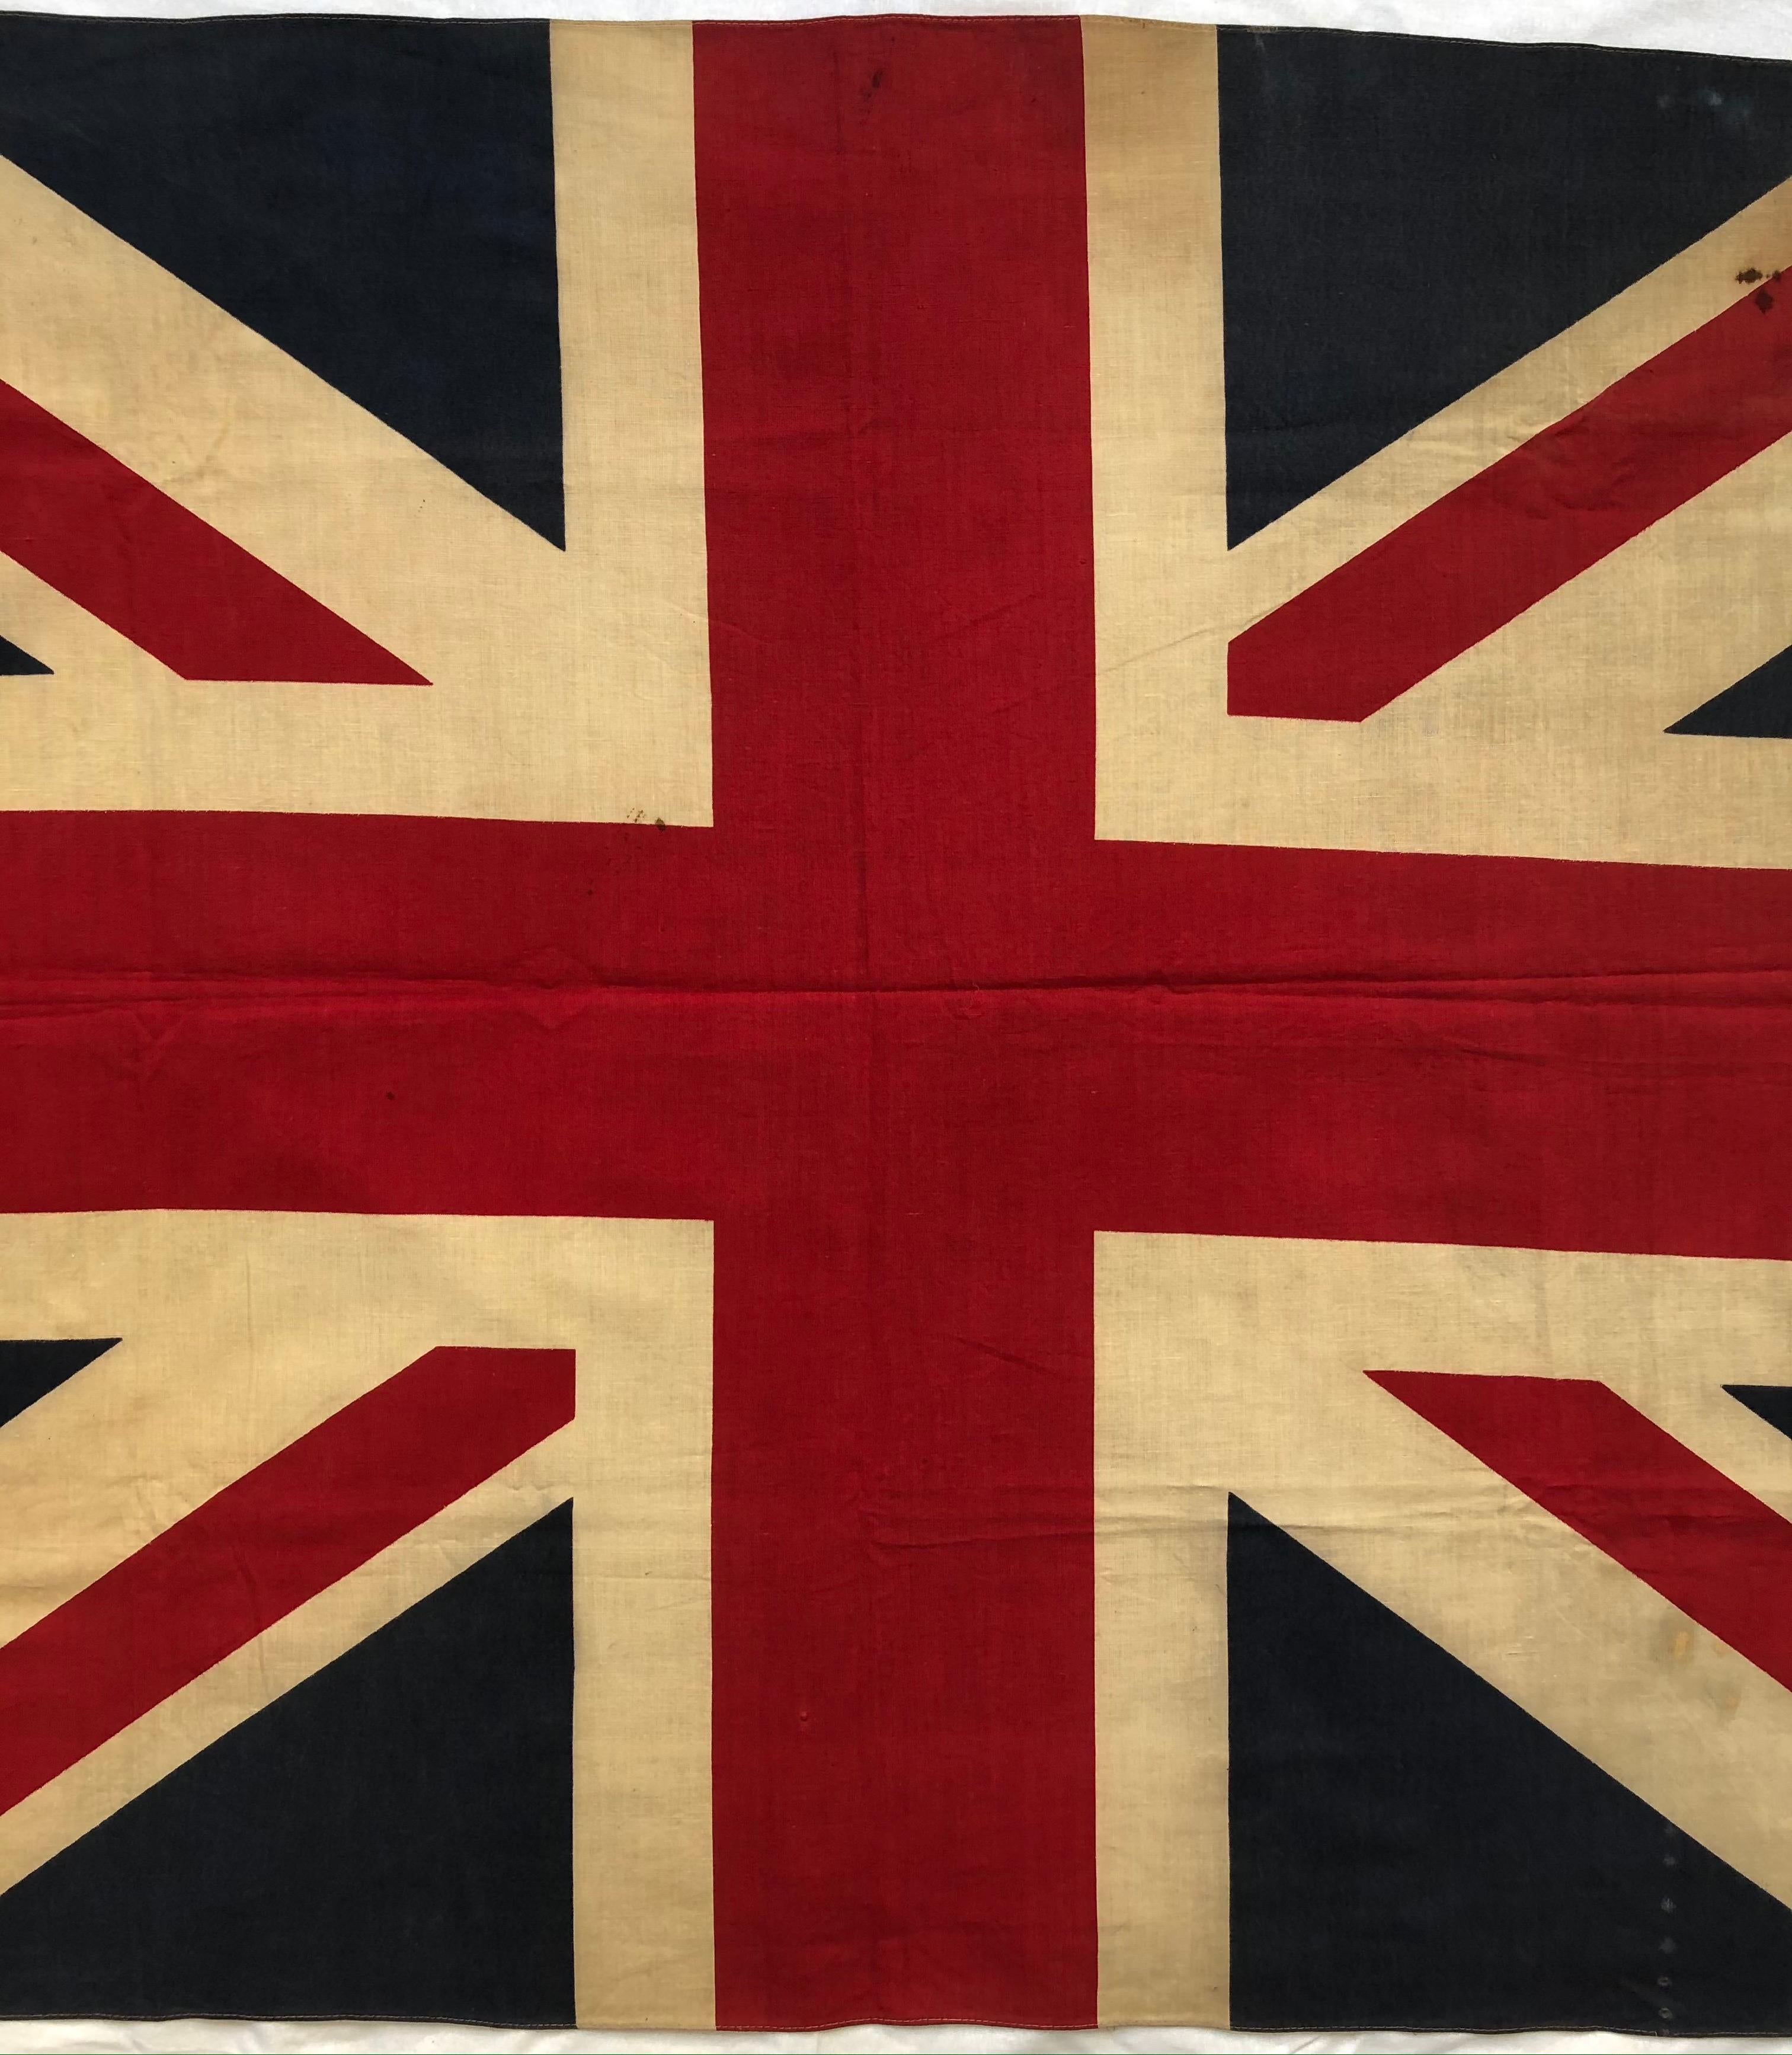 British Union Flag (